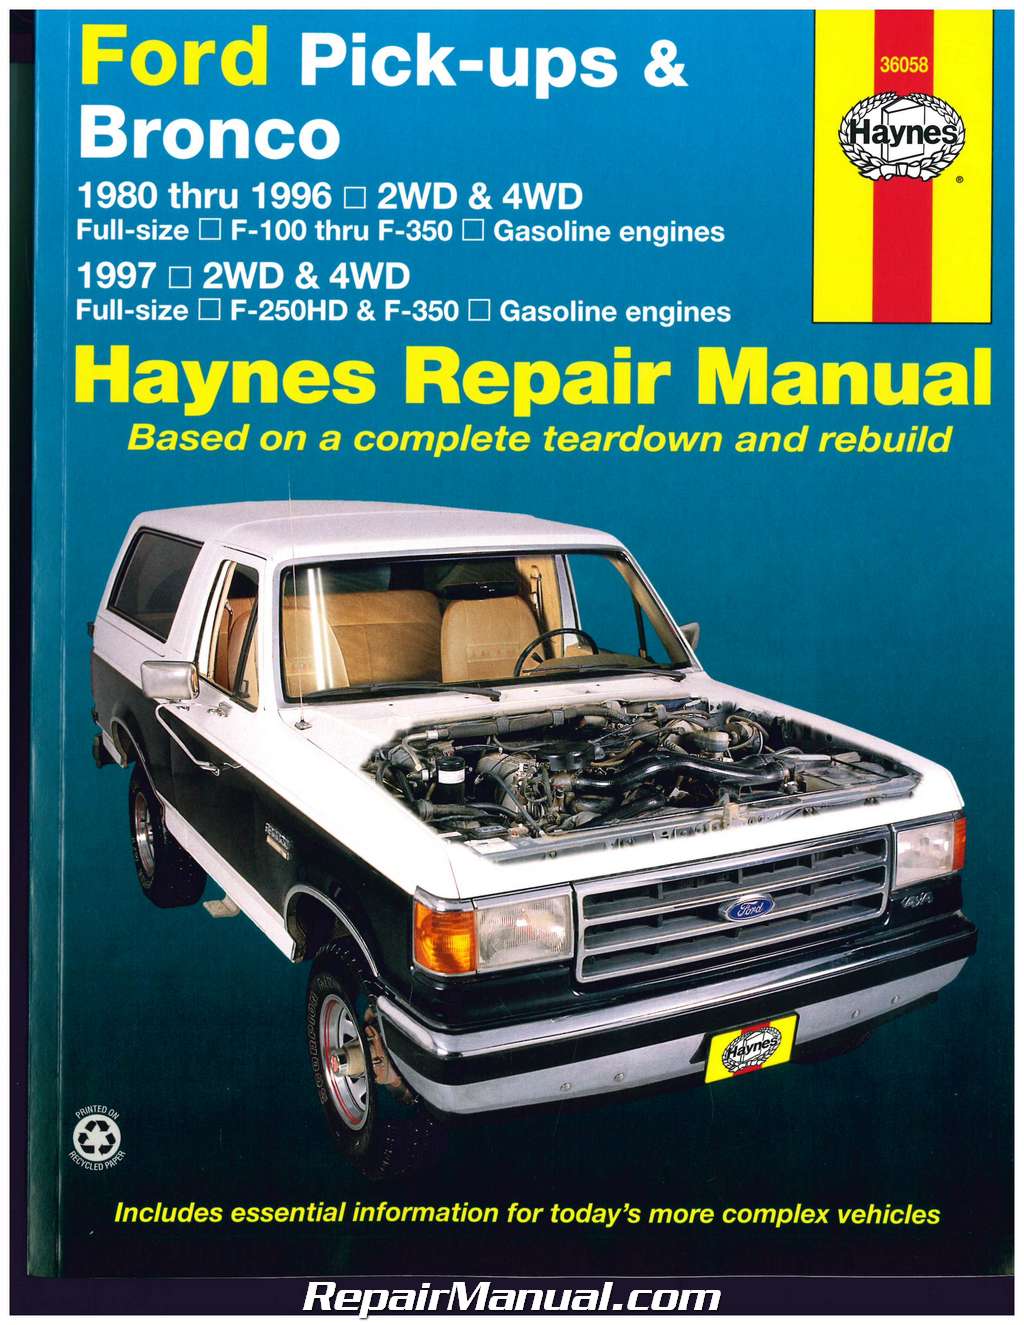 Ford pick-ups and bronco haynes repair manual pdf #1